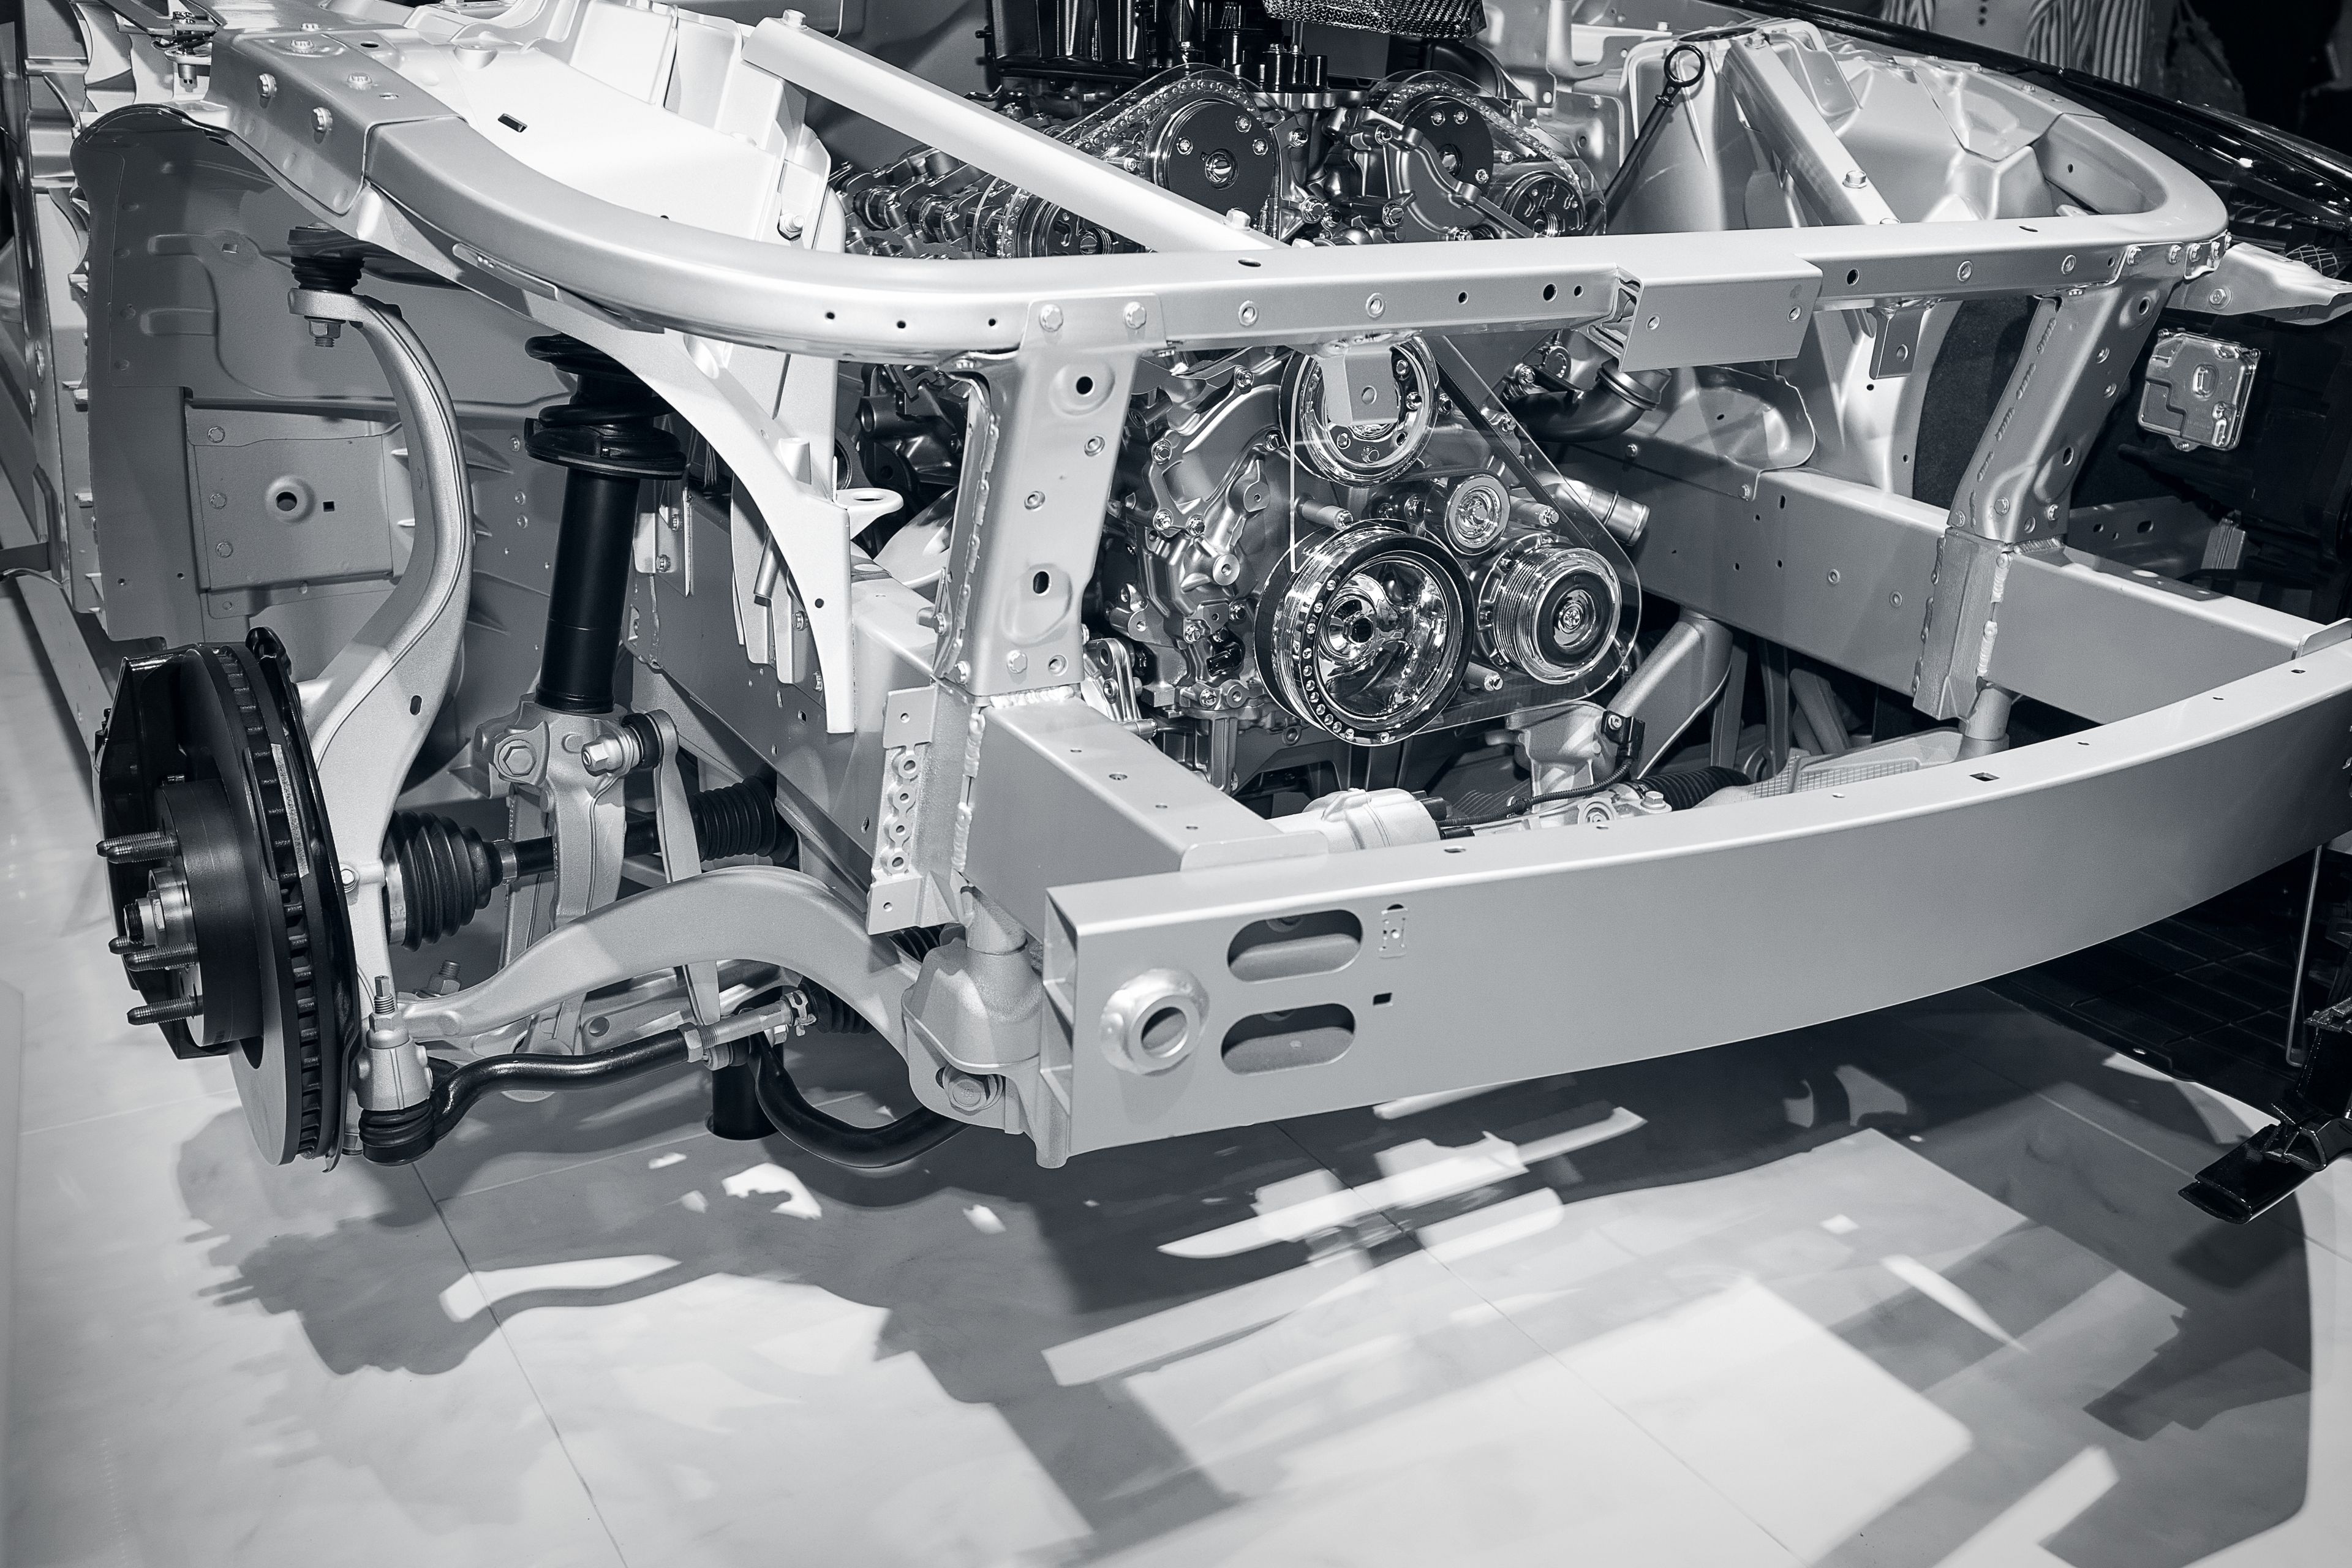 Bild zeigt einen komplett aus Aluminium bestehenden Rahmen in dem Motor und Radaufhängung zu sehen sind.